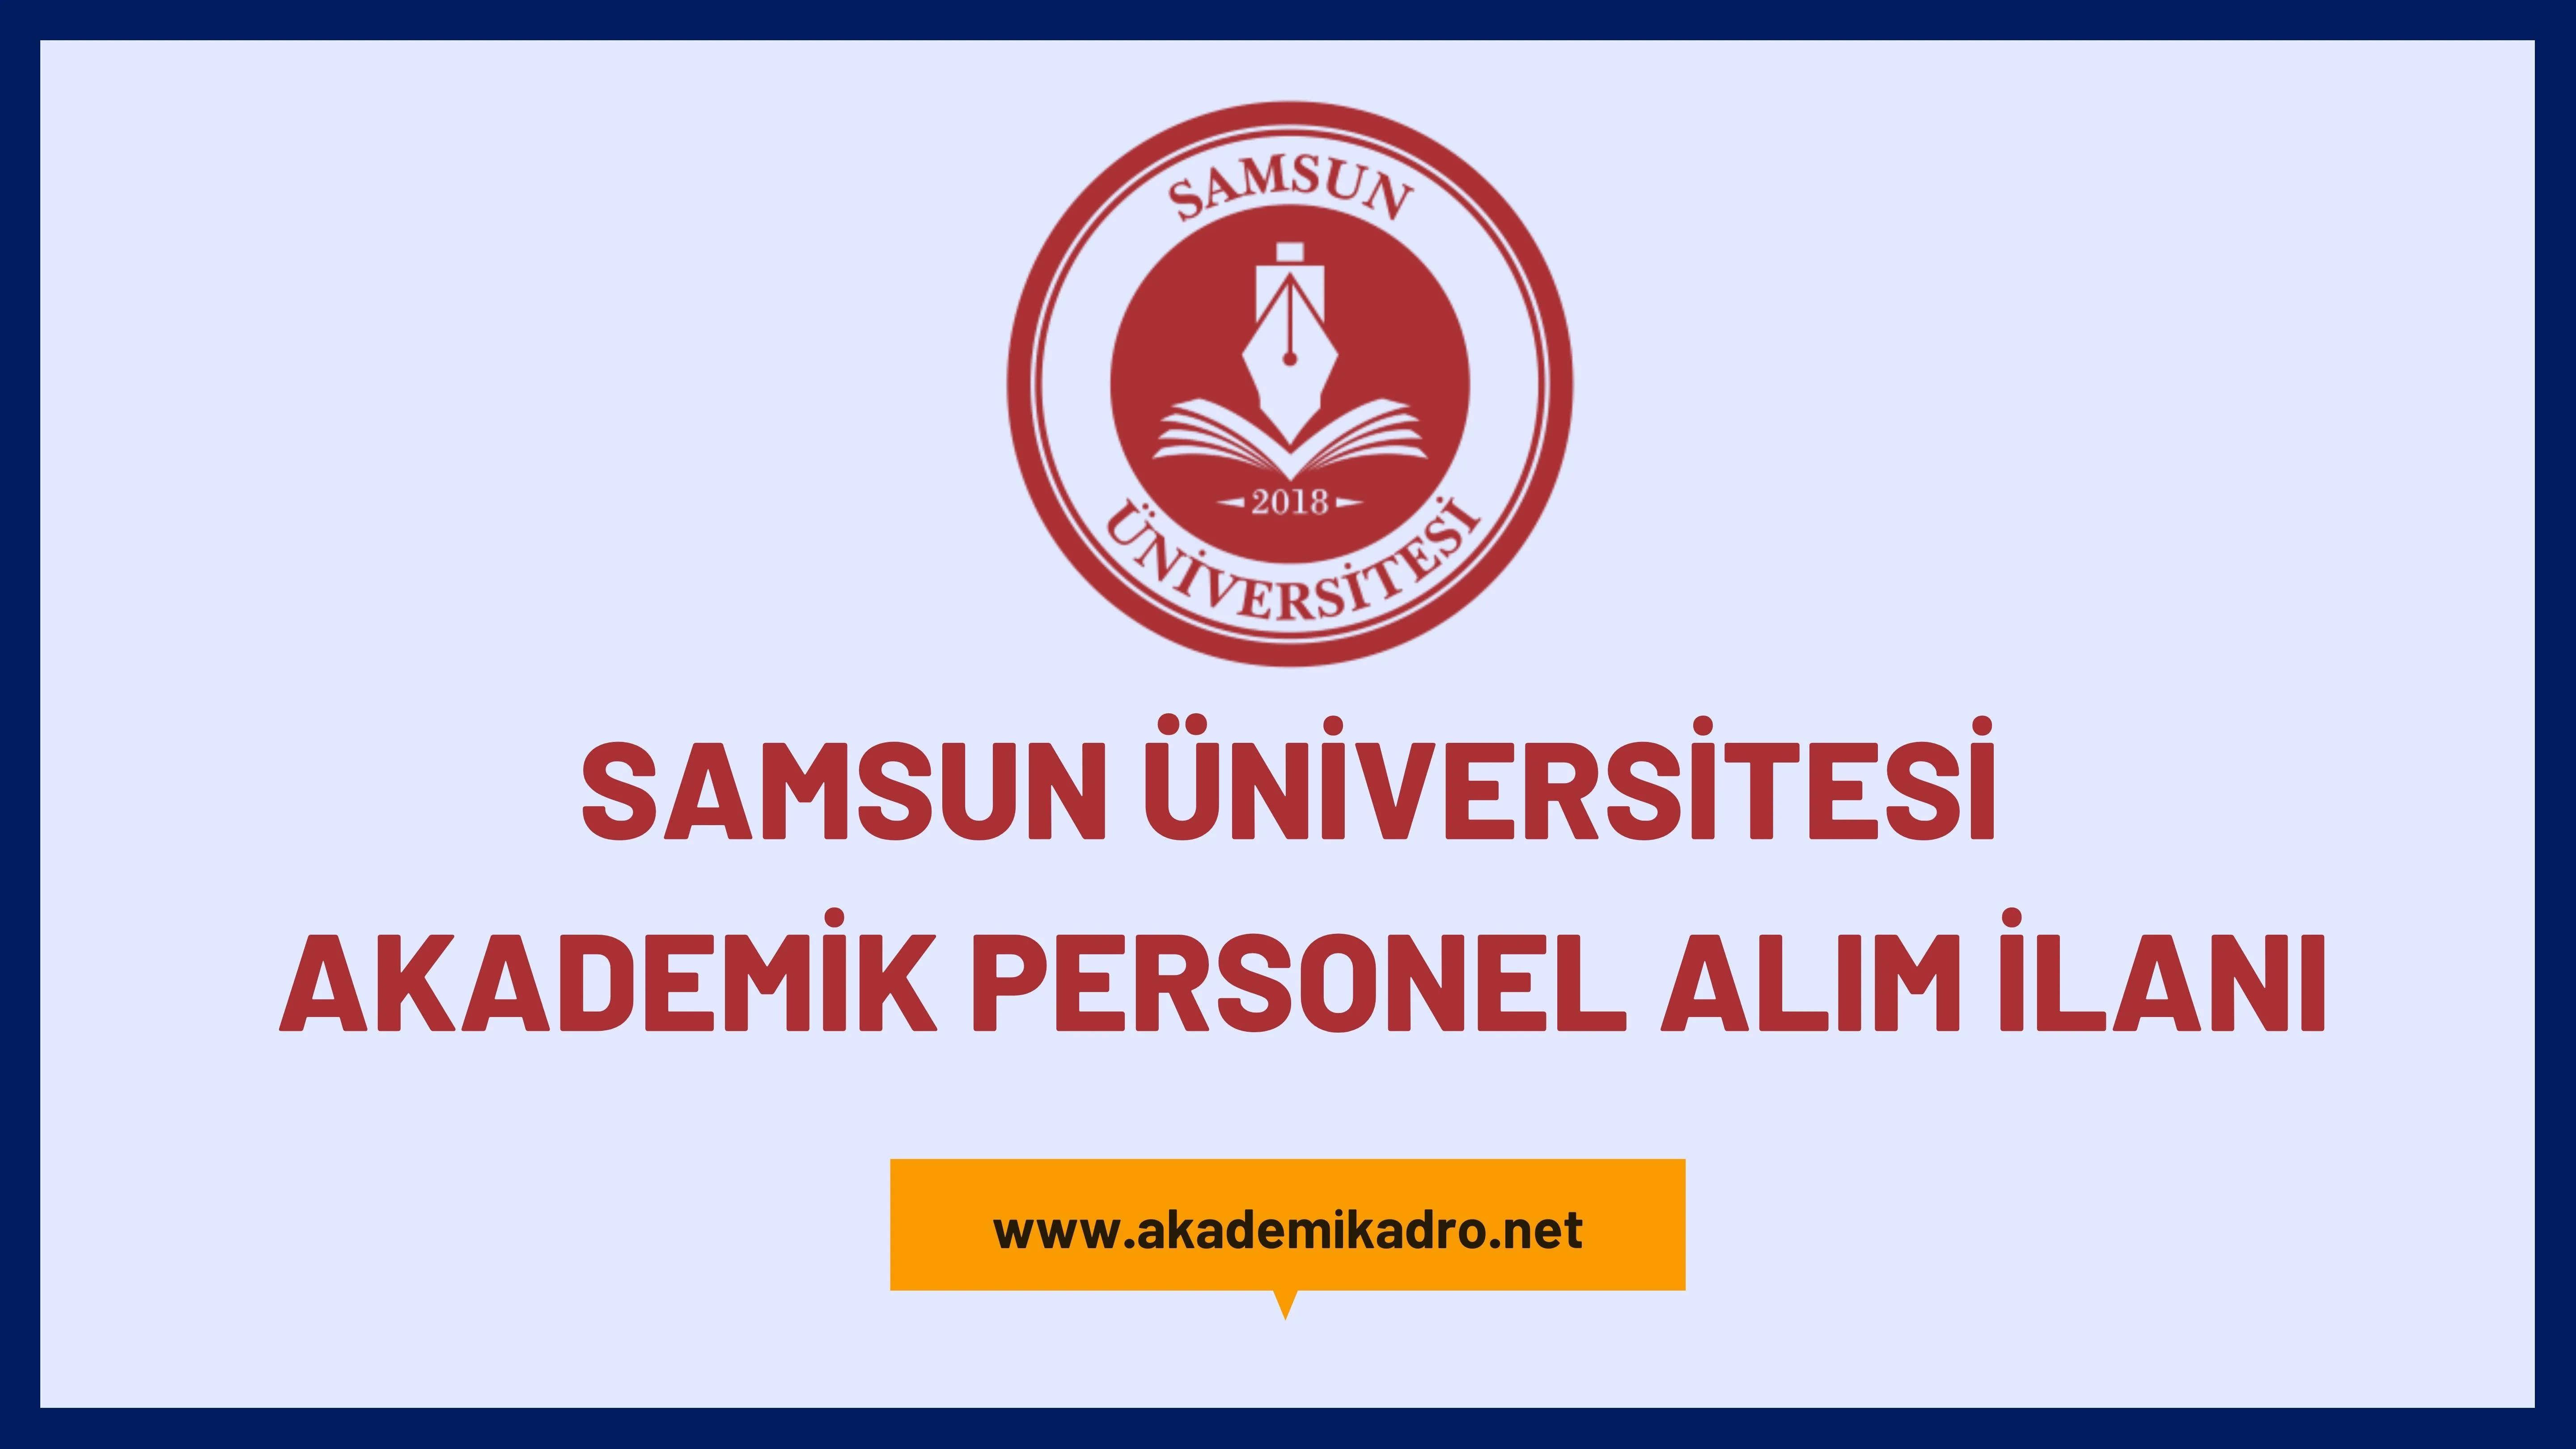 Samsun Üniversitesi birçok alandan 19 Öğretim üyesi alacak. Son başvuru tarihi 14 Haziran 2023.